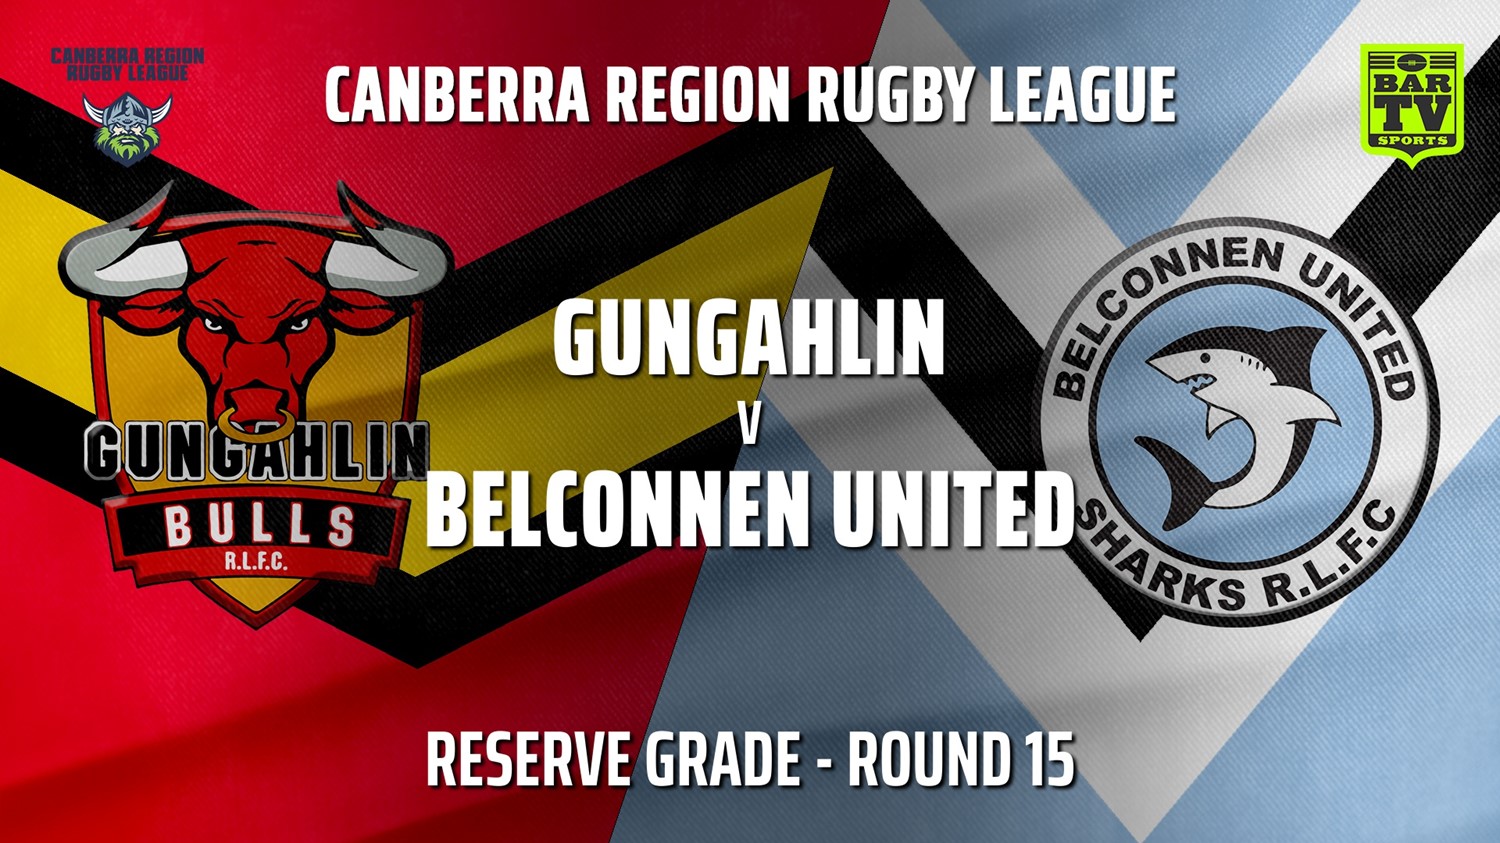 210807-Canberra Round 15 - Reserve Grade - Gungahlin Bulls v Belconnen United Sharks Slate Image